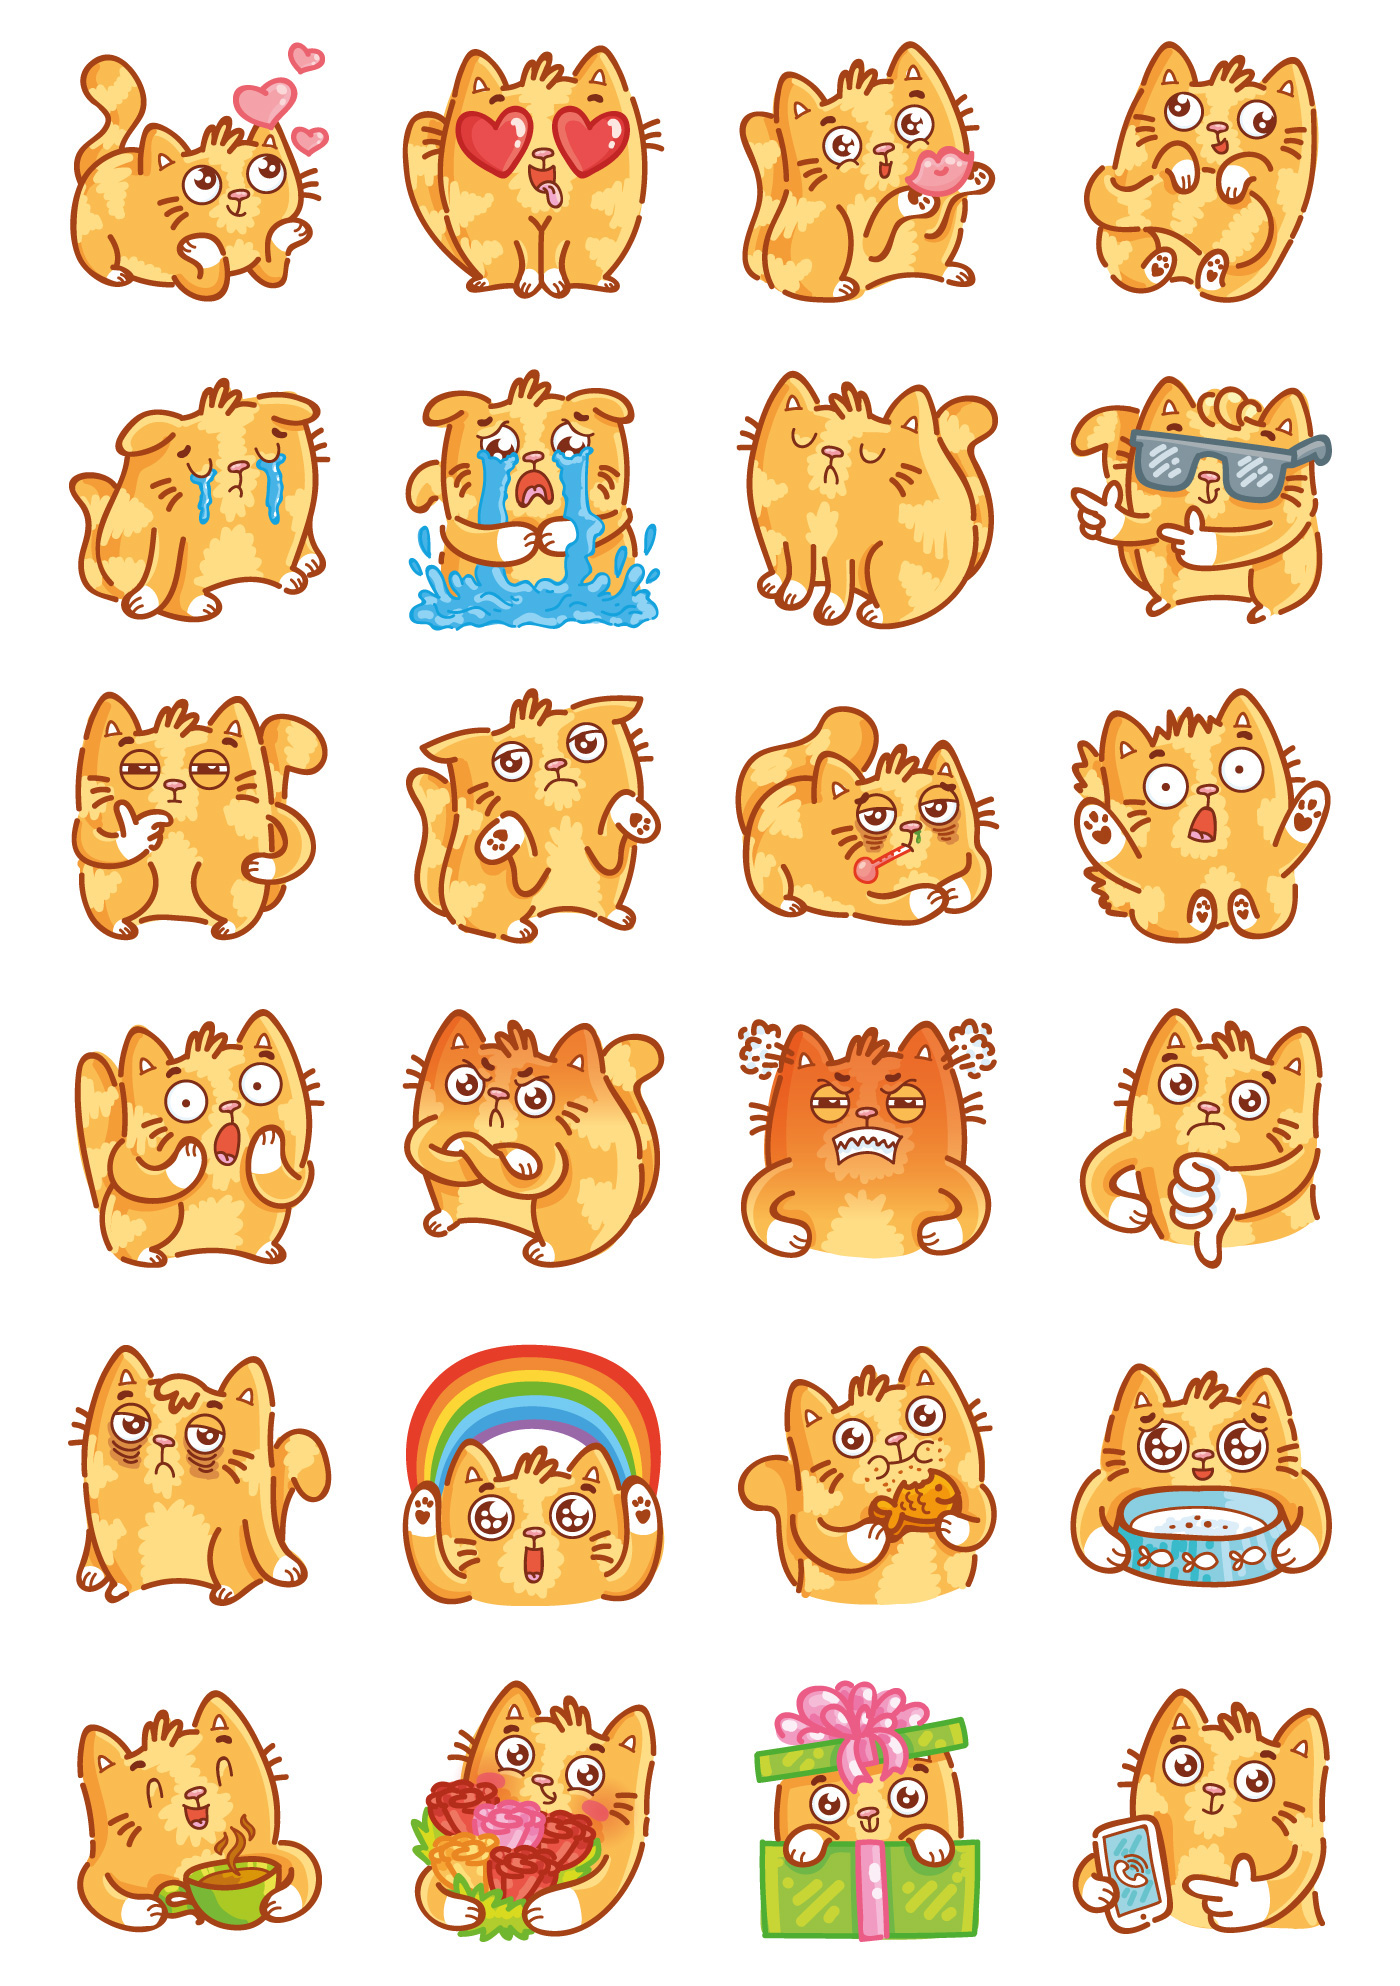 Cat kitty kitten cute sweet stickers imessage appstore animal stickers sticker